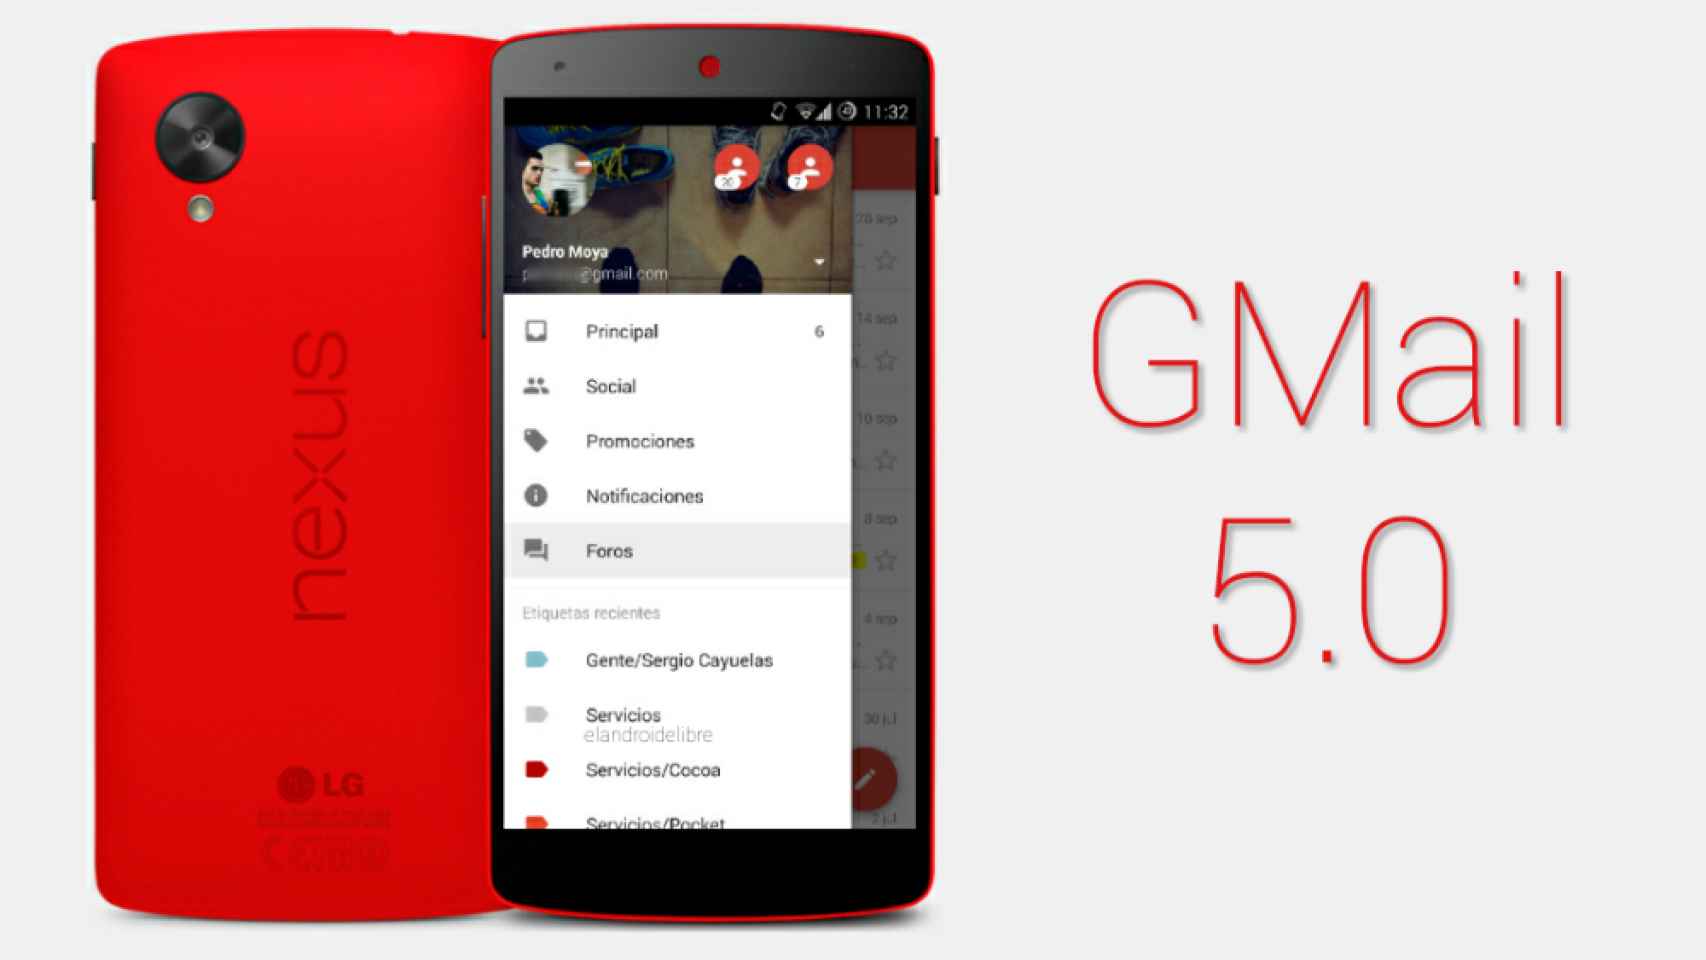 GMail 5.0 para Android a fondo: todas las novedades al detalle